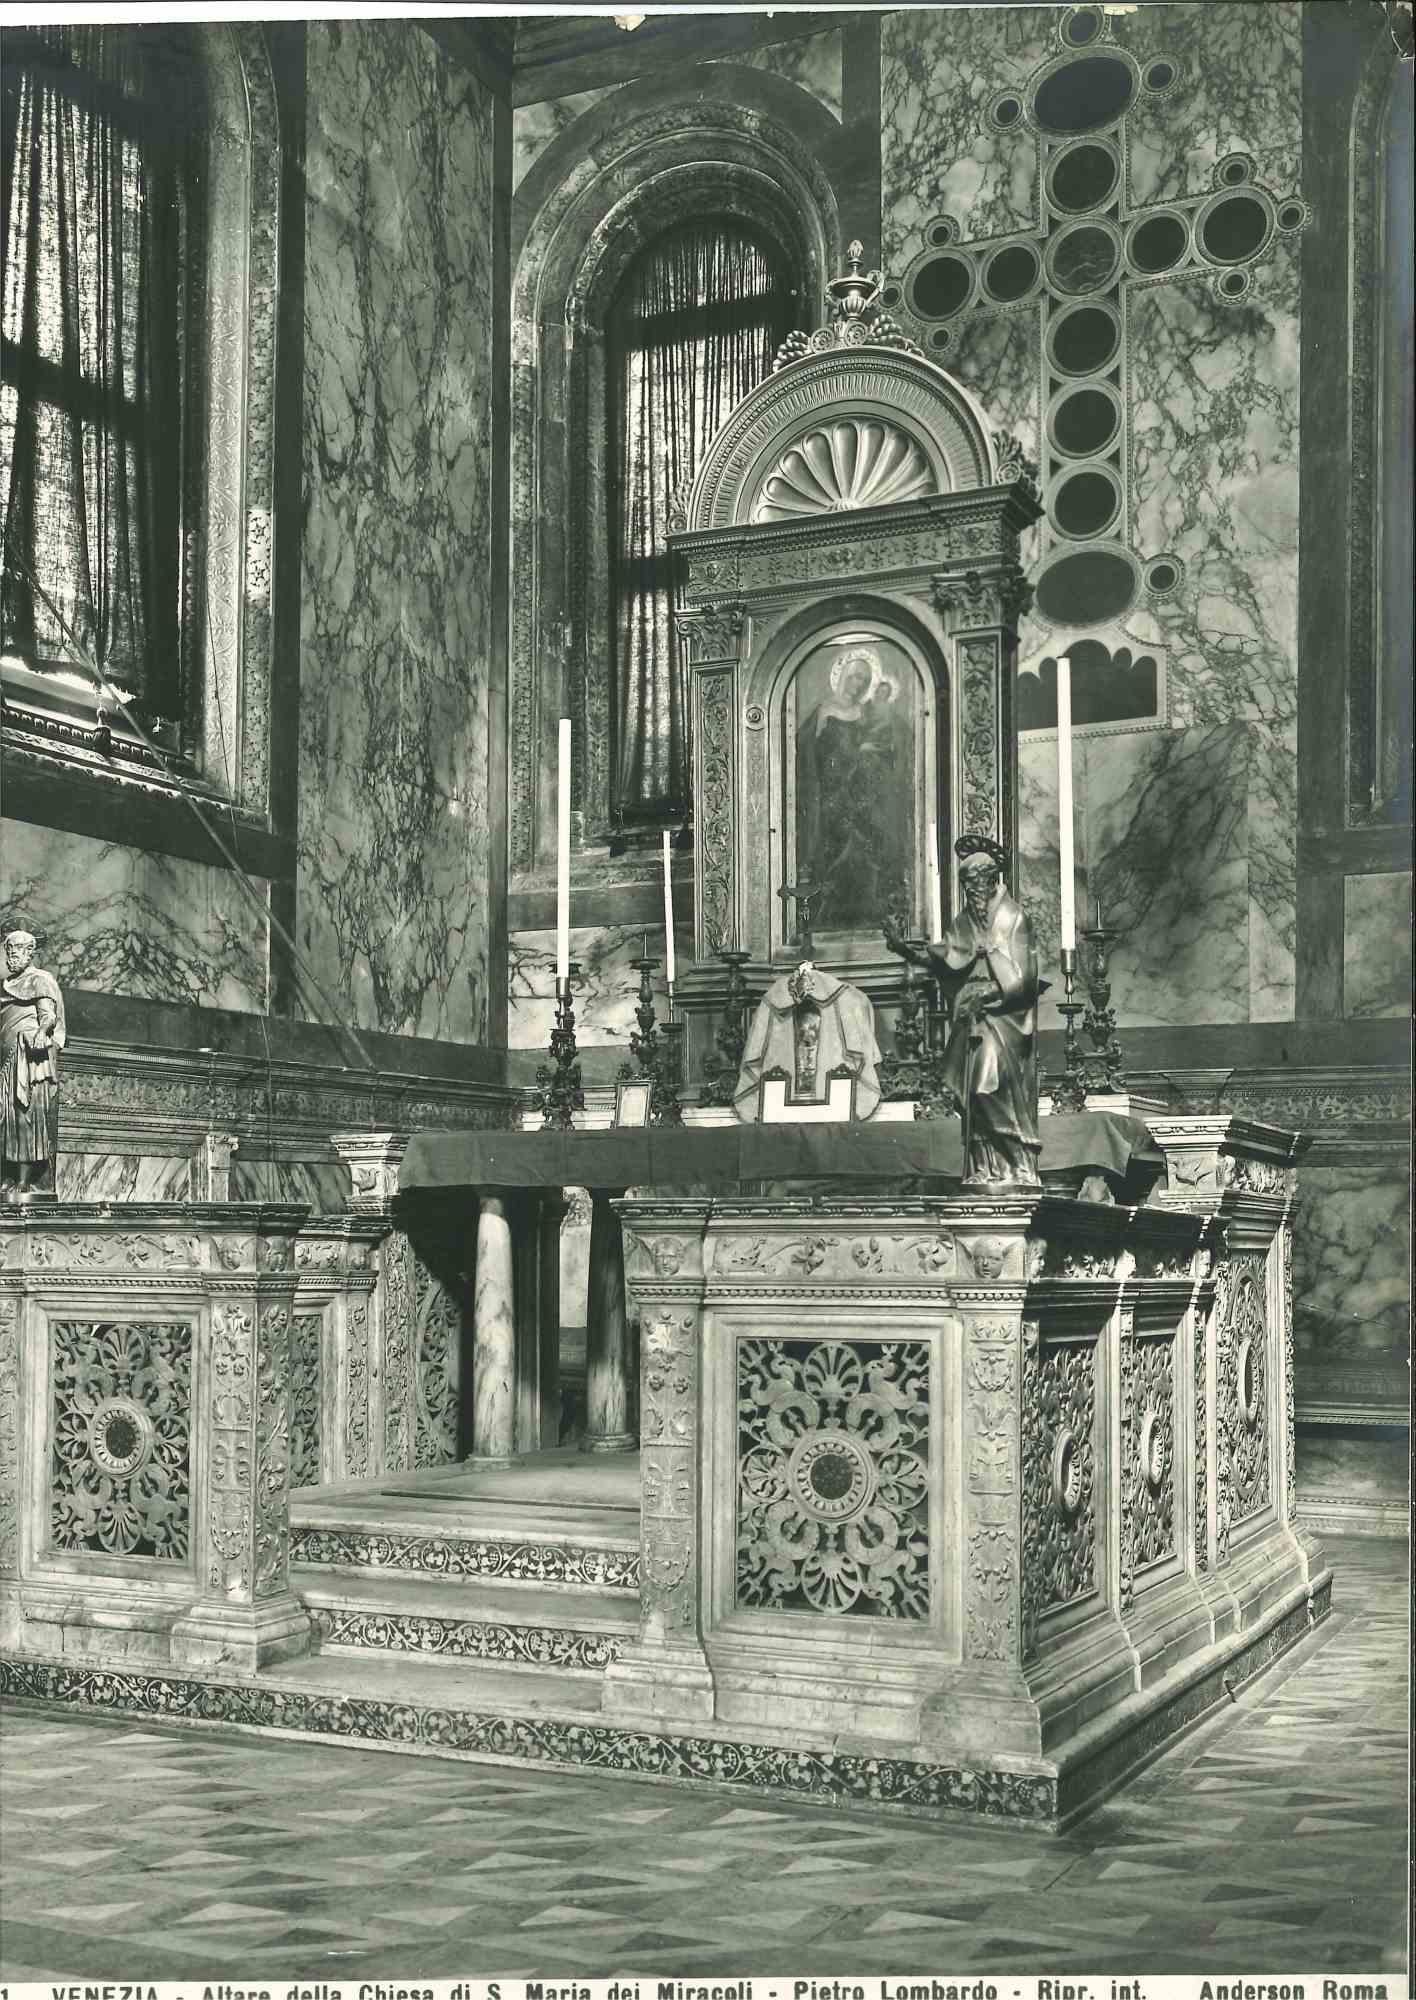 Architektur- und Kunstfoto – Kirche S. Maria dei Miracoli – Venedig – 1920er Jahre